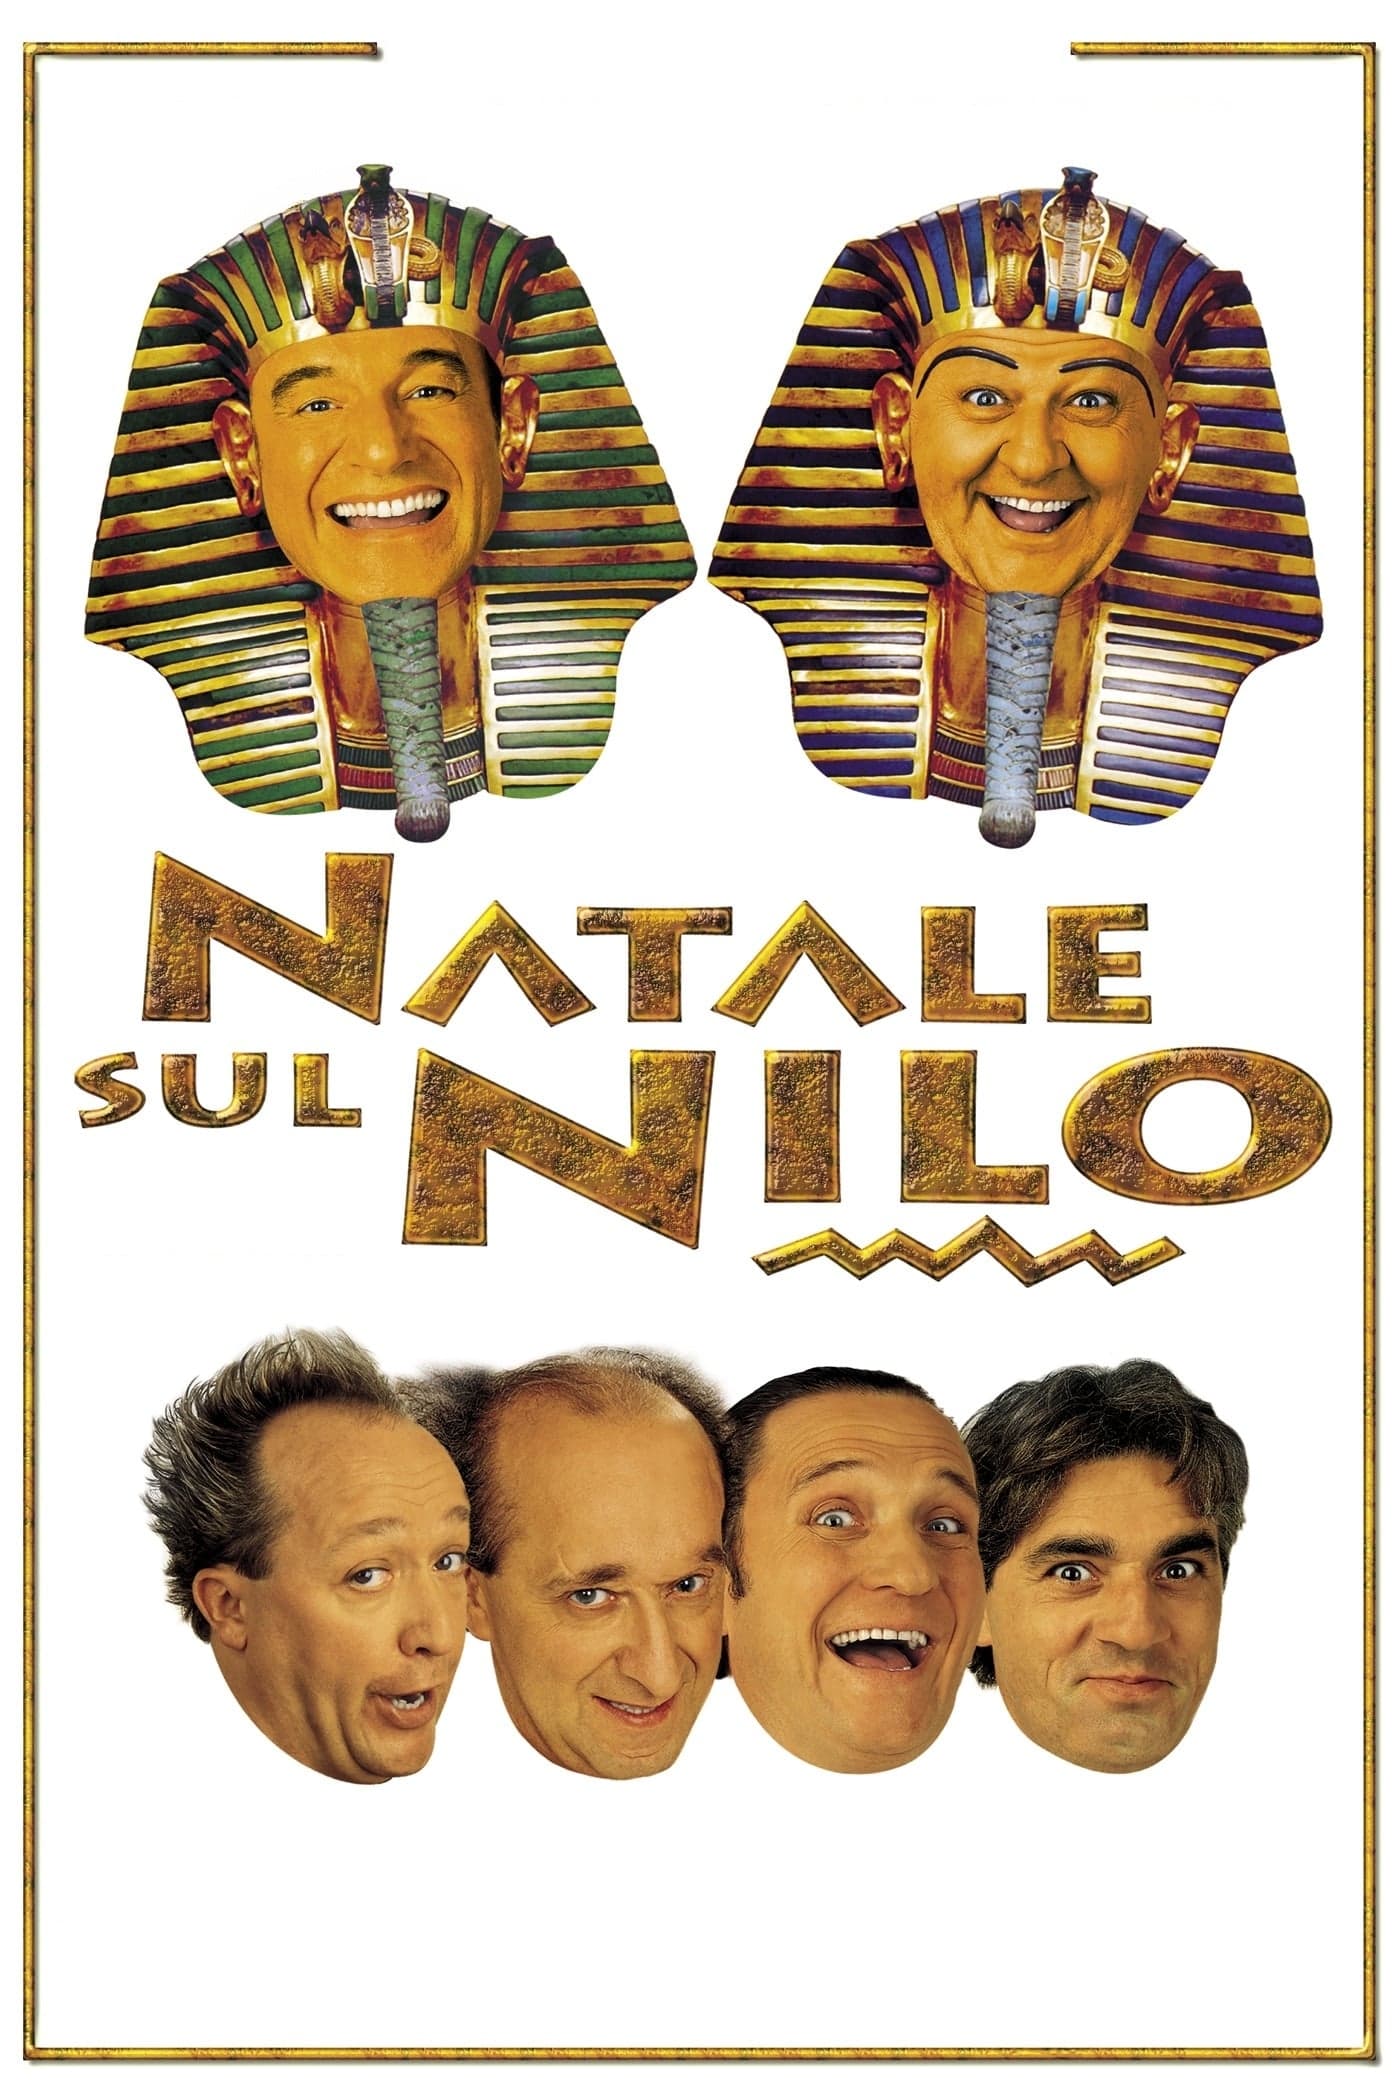 Natale sul Nilo (2002)